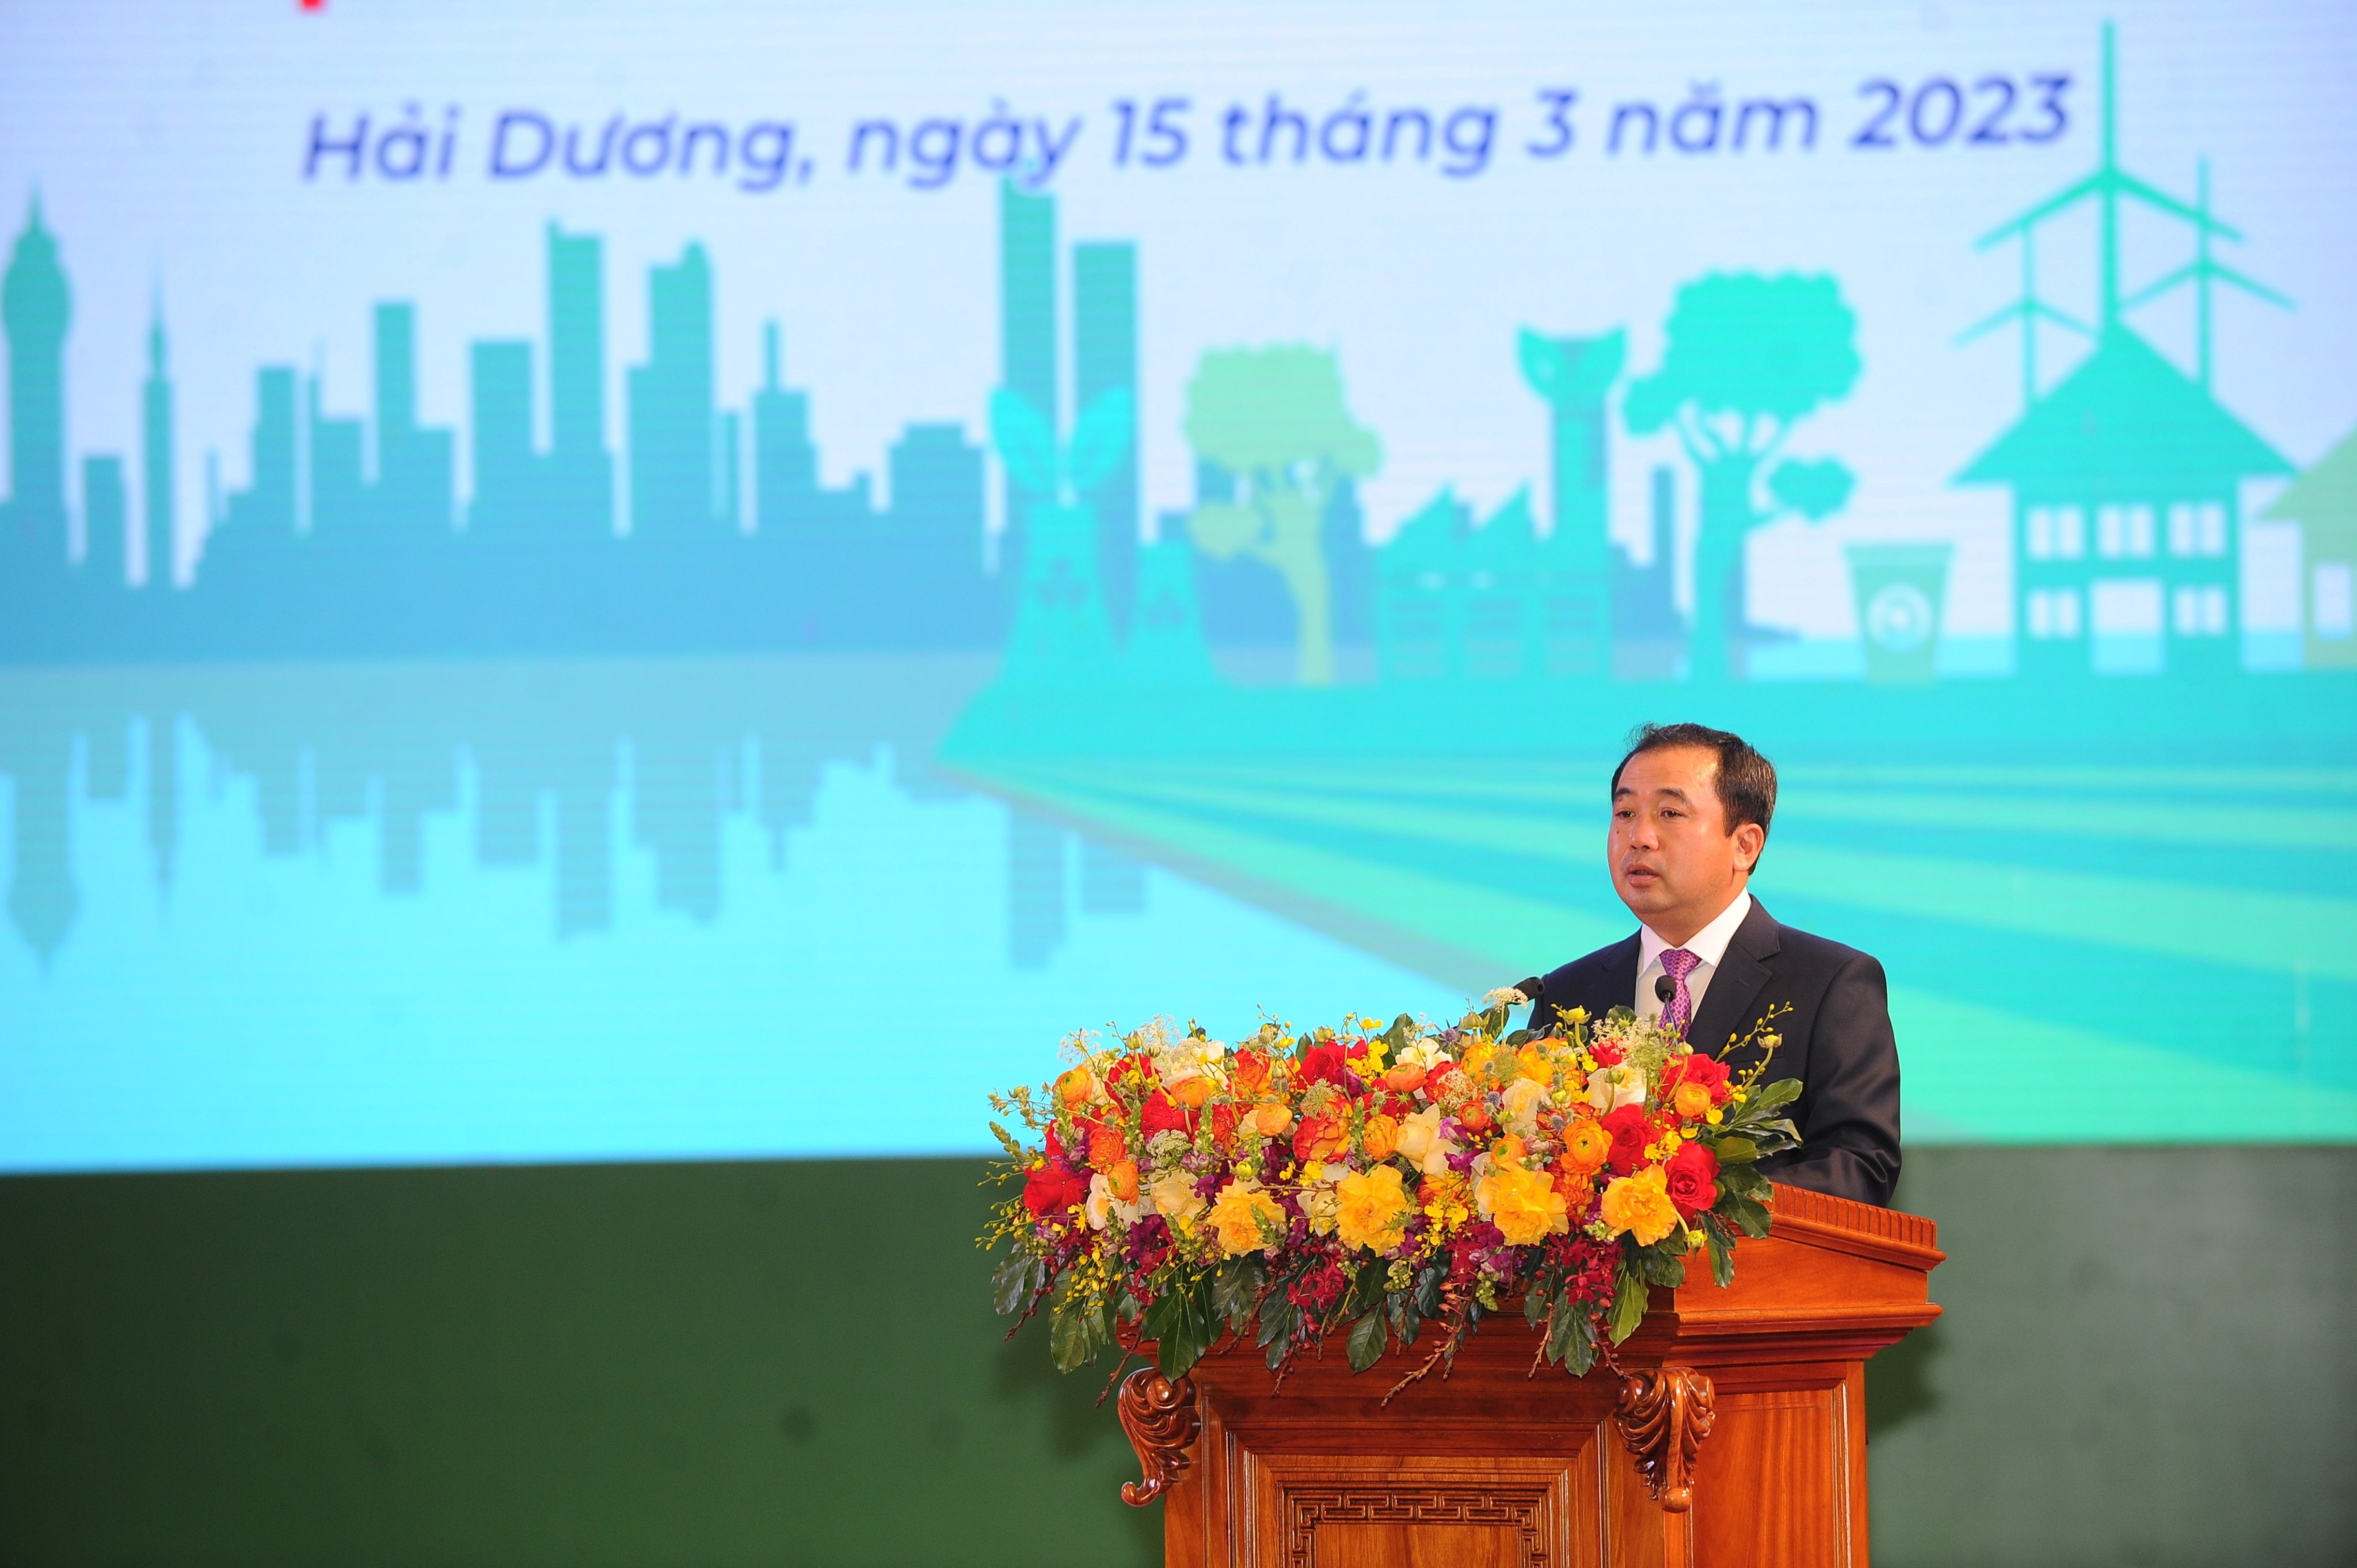 Ông Trần Đức Thắng, Bí thư Tỉnh ủy Hải Dương phát biểu tại buổi lễ công bố